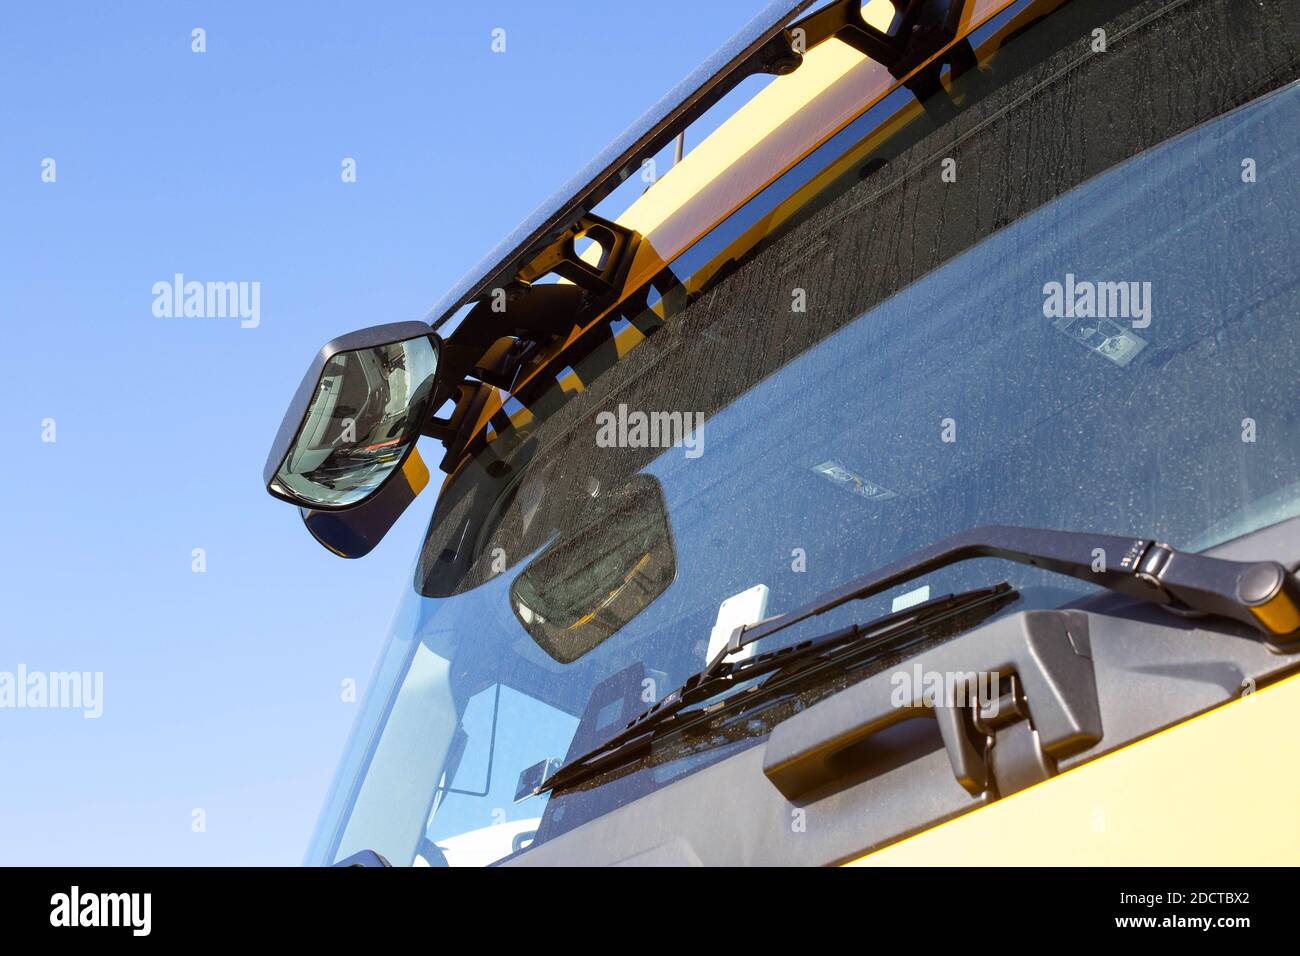 Specchietto aggiuntivo nel carrello per la visualizzazione dei punti ciechi della vettura. Punti ciechi nei camion, parabrezza sporco, sicurezza Foto Stock